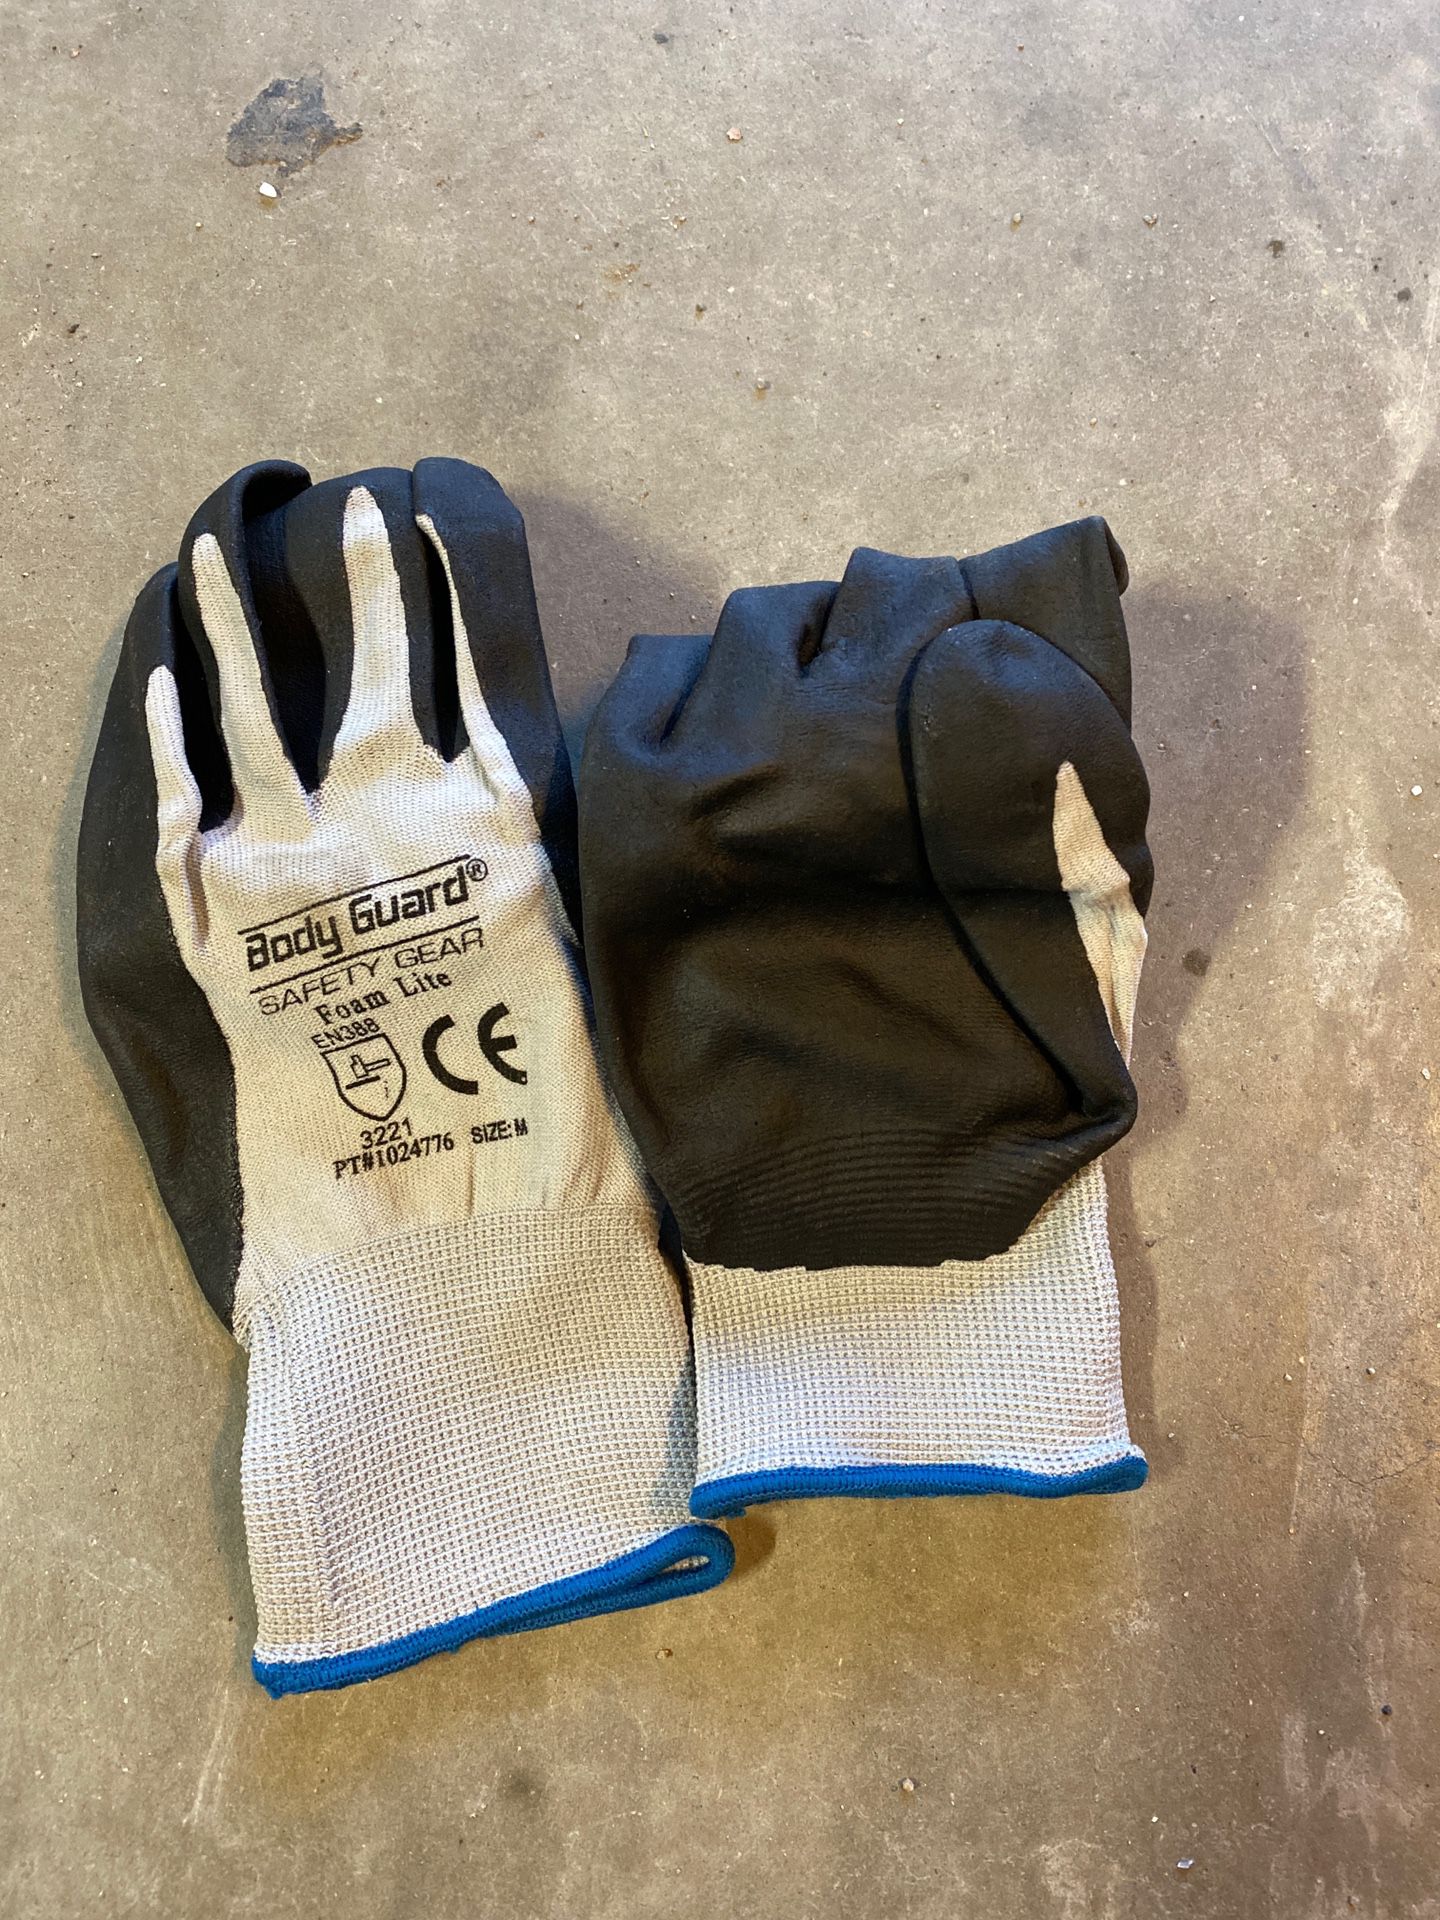 Working gloves size medium